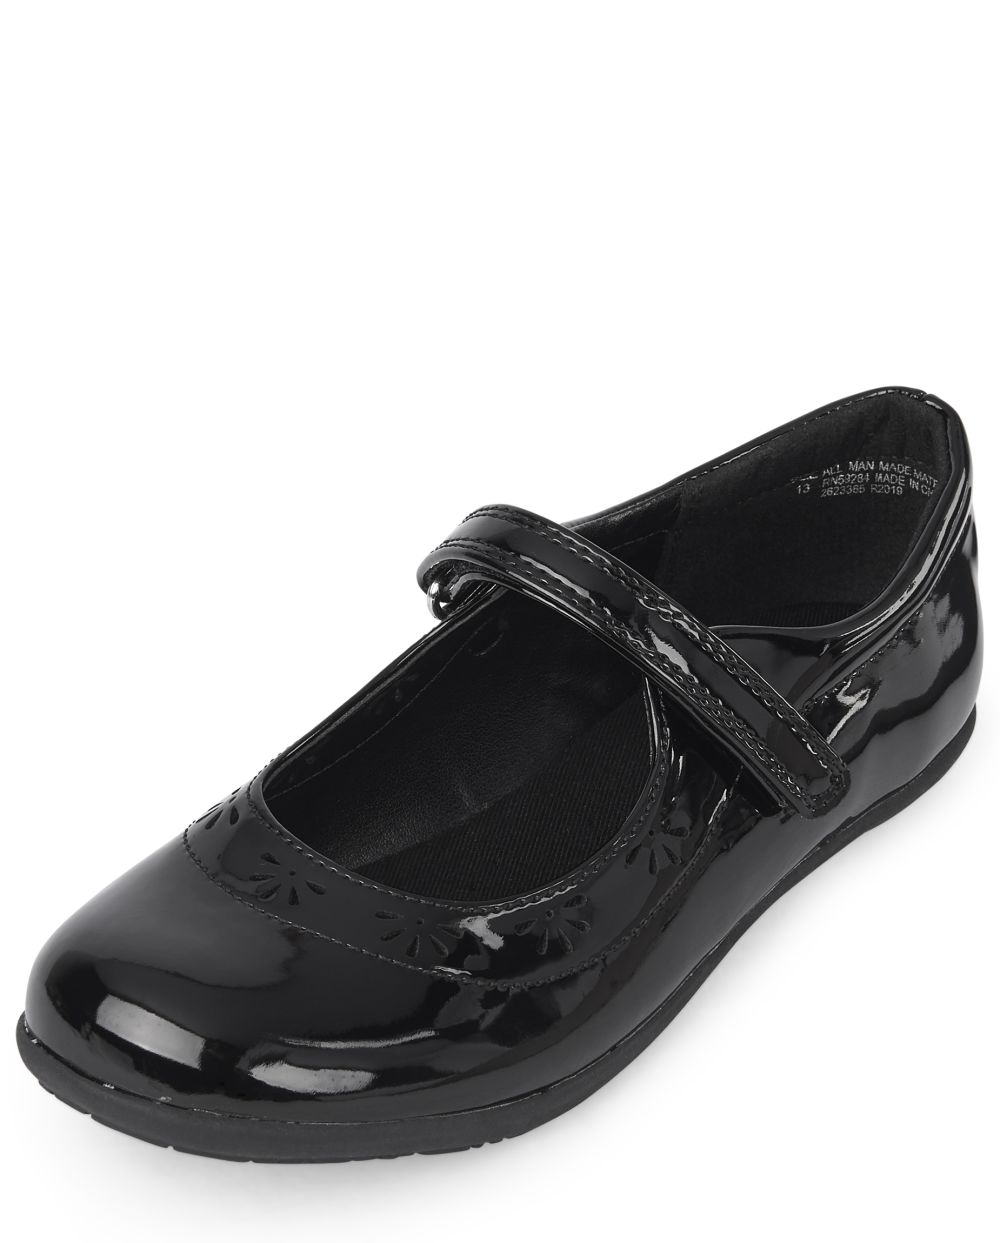 

Girls Uniform Flower Shoes - Black - The Children's Place